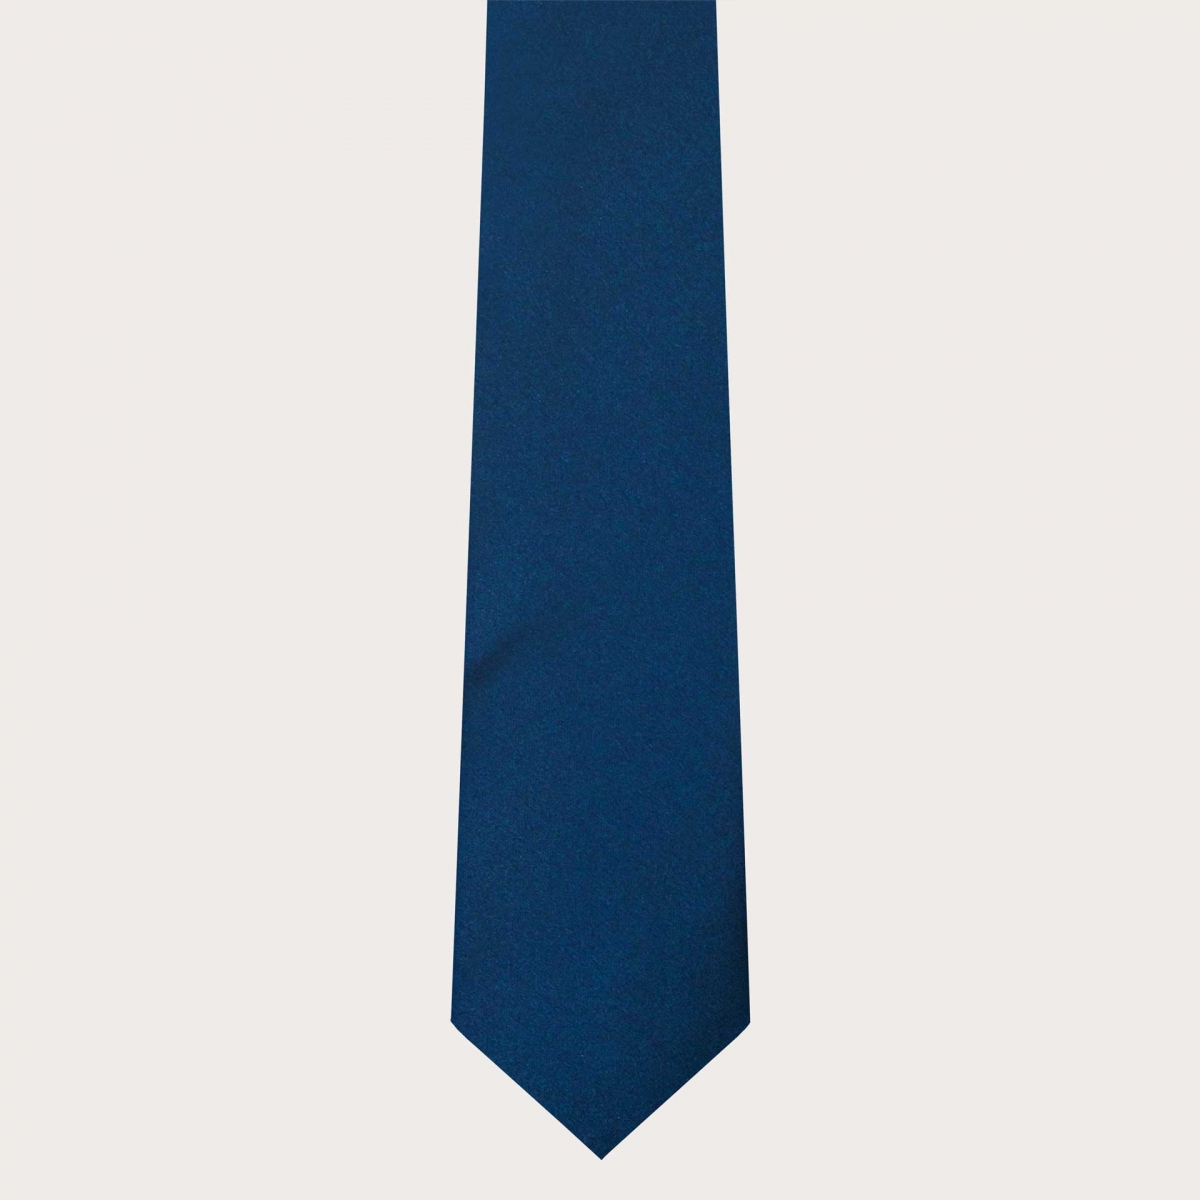 BRUCLE Classic necktie in blue silk satin